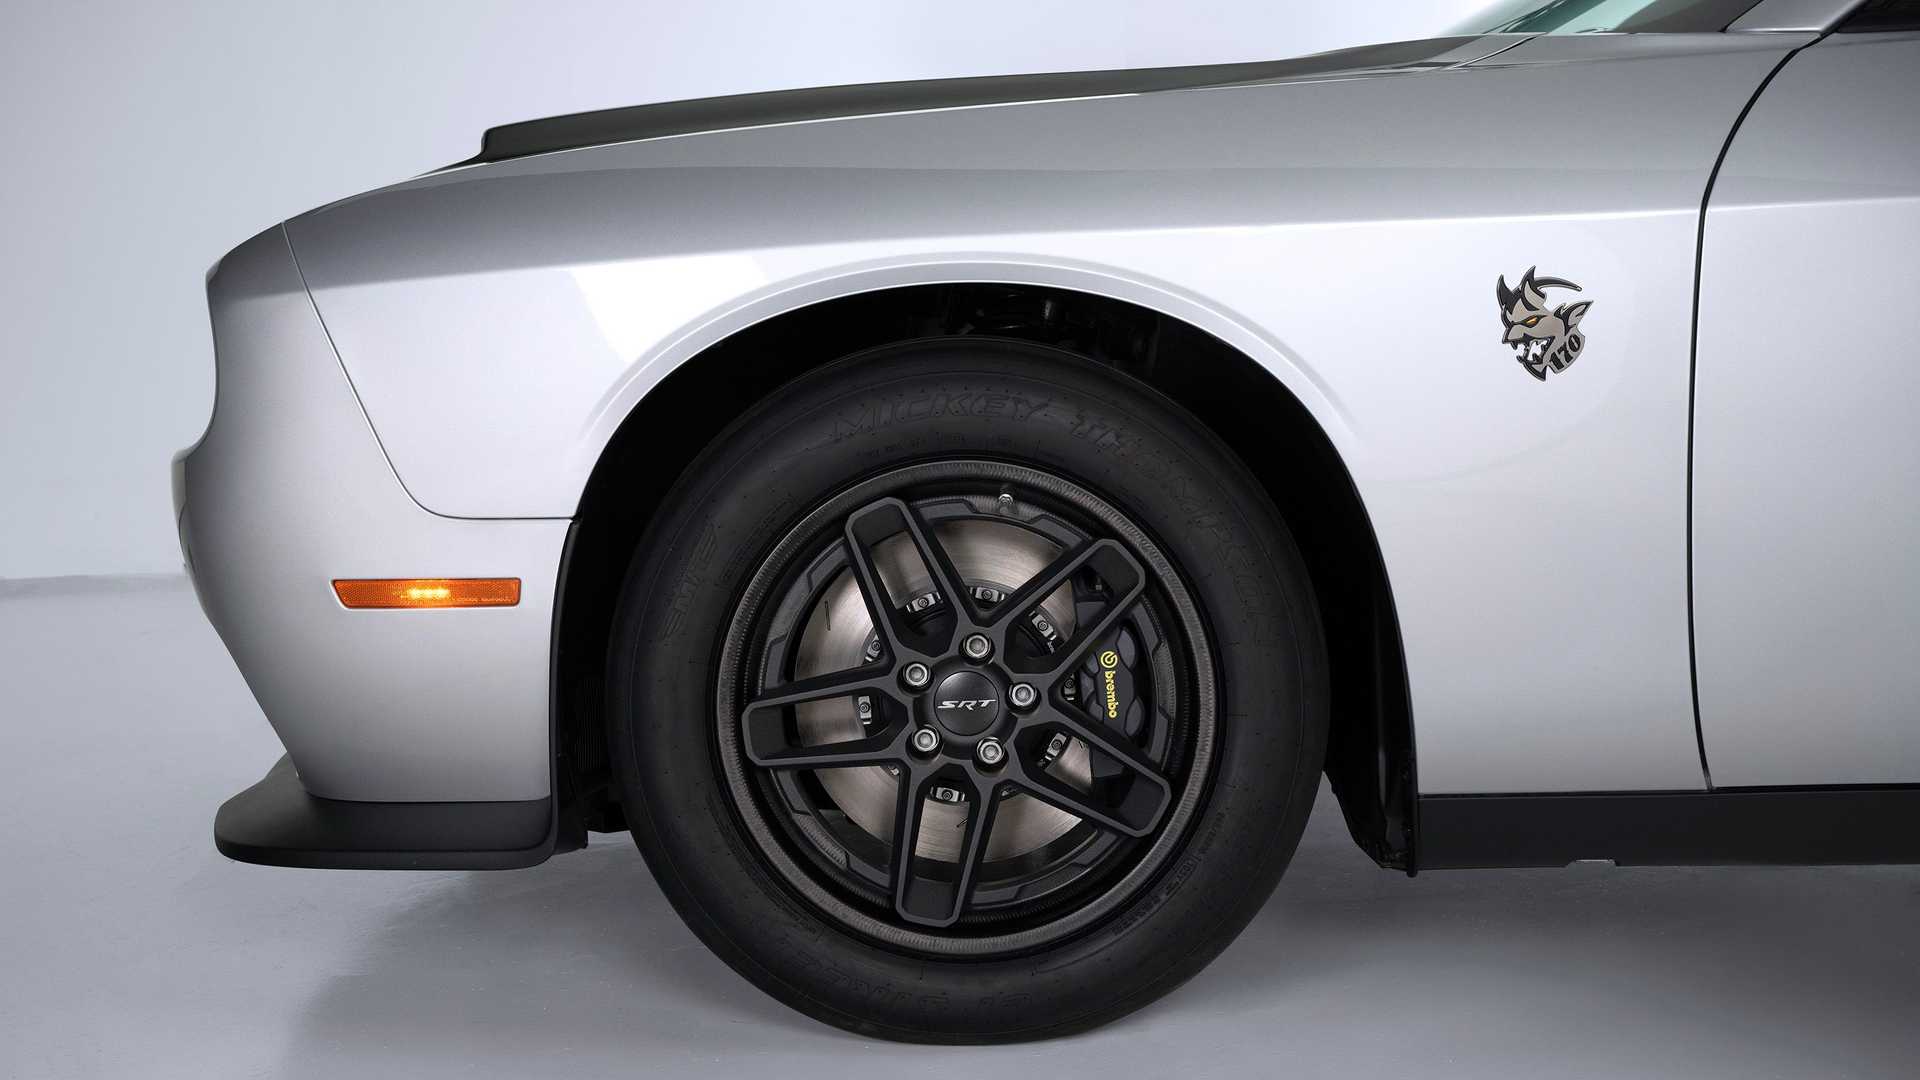 دودج تدشن أسرع وأقوى سيارة عضلية في تاريخ العلامة باسم تشالنجر SRT ديمون 170 20